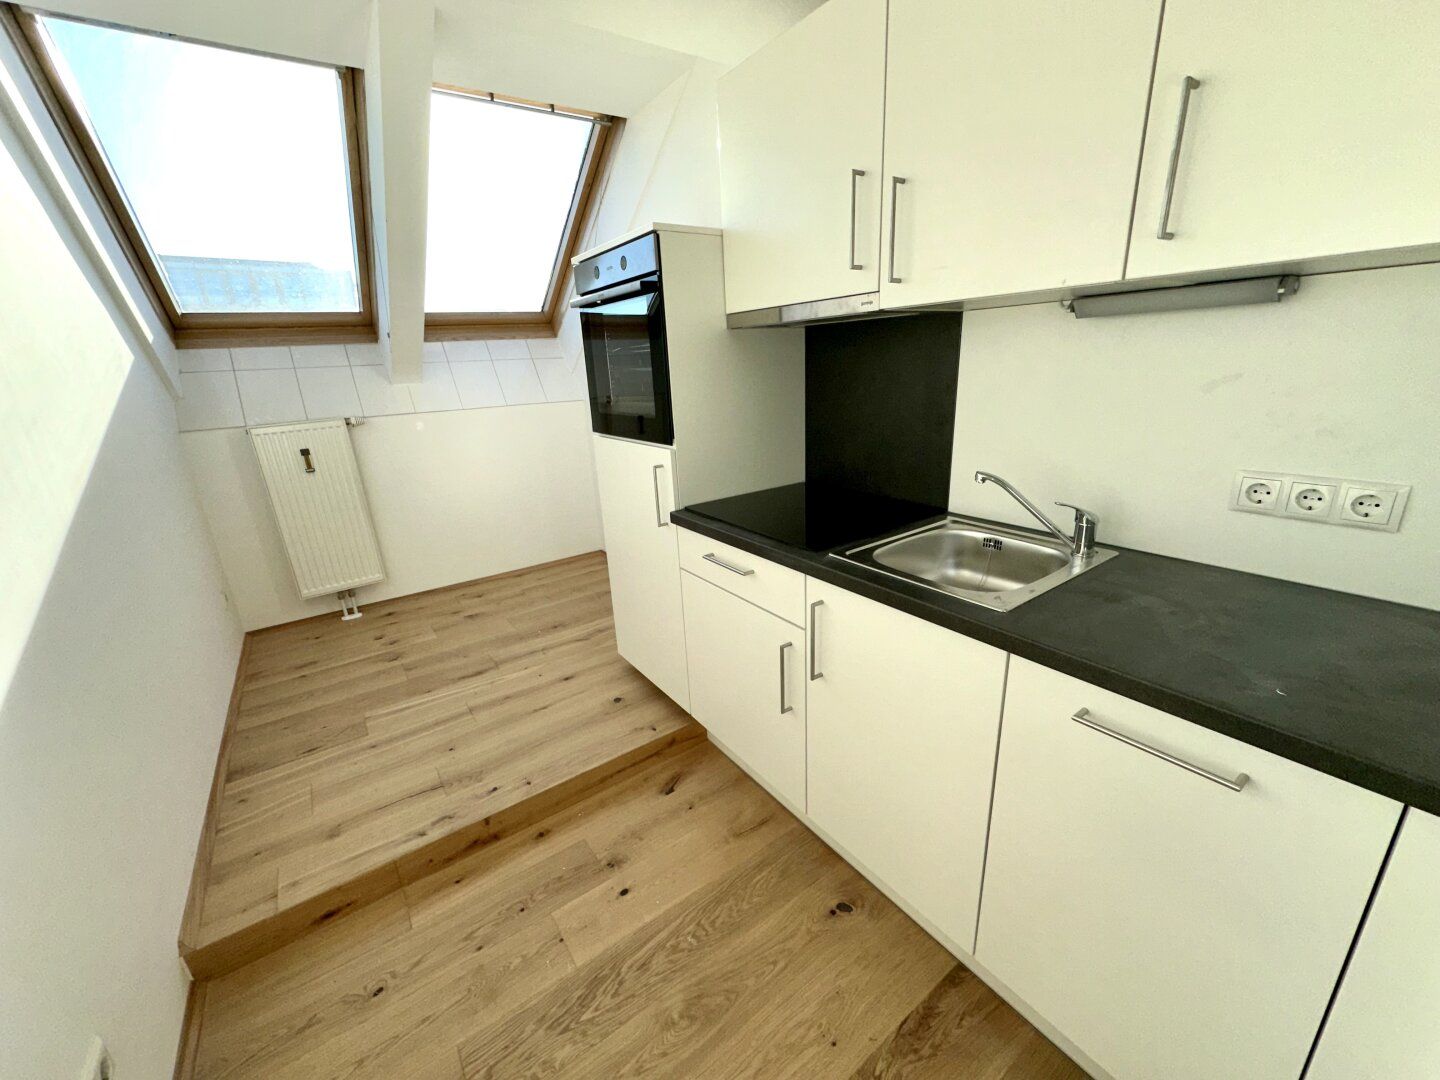 Neu saniert! Perfekt aufgeteilte 2-Zimmer-Wohnung in sehr zentraler Lage im Grazer Bezirk Geidorf in unmittelbarere Näher der Karl-Franzens-Universität